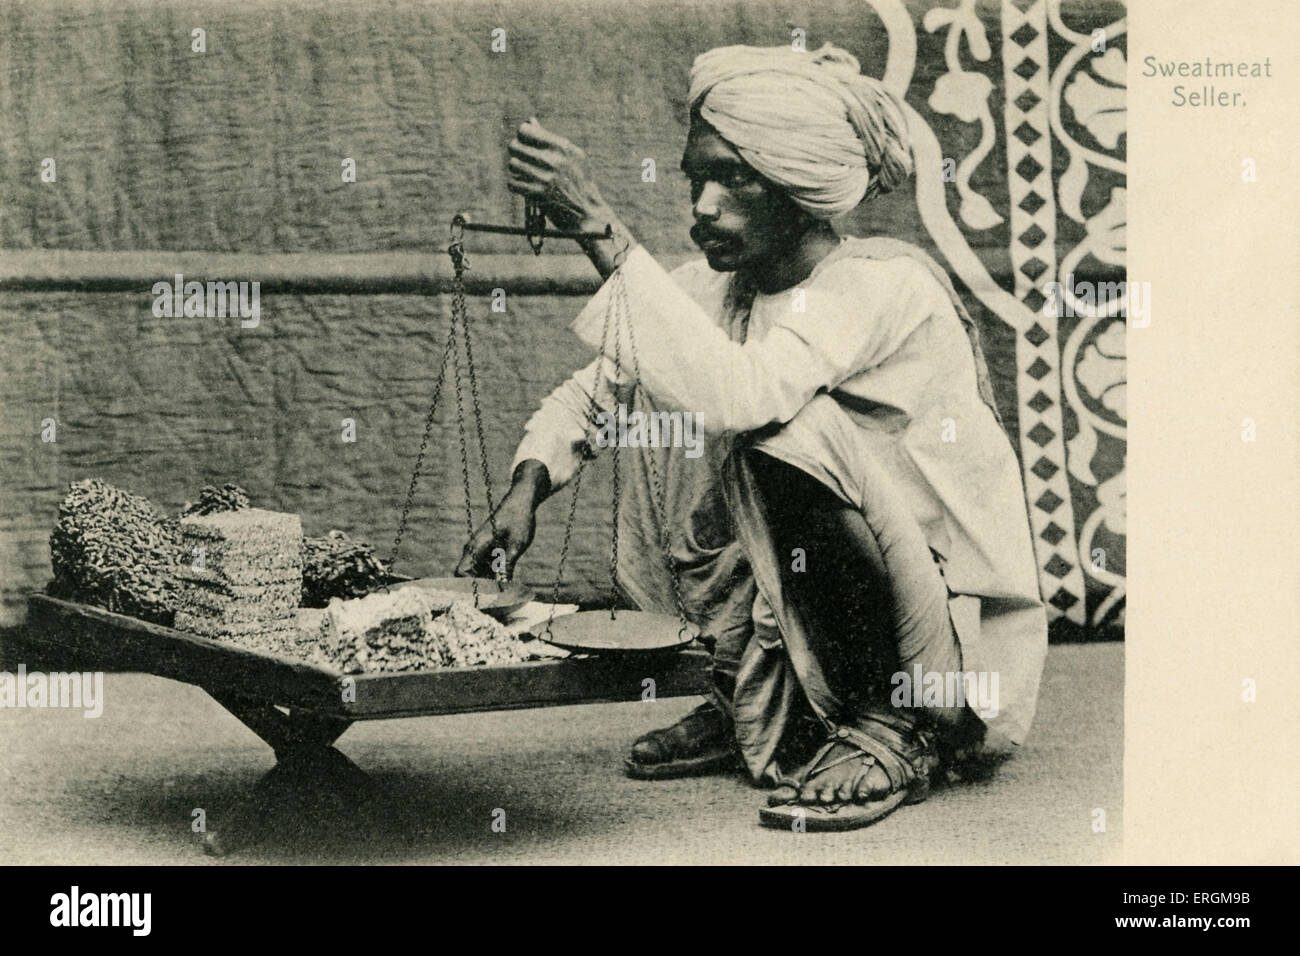 Vendeur sweetmeat indien. Photographie du début du xxe siècle. Le vendeur détient ses marchandises et échelles. Banque D'Images